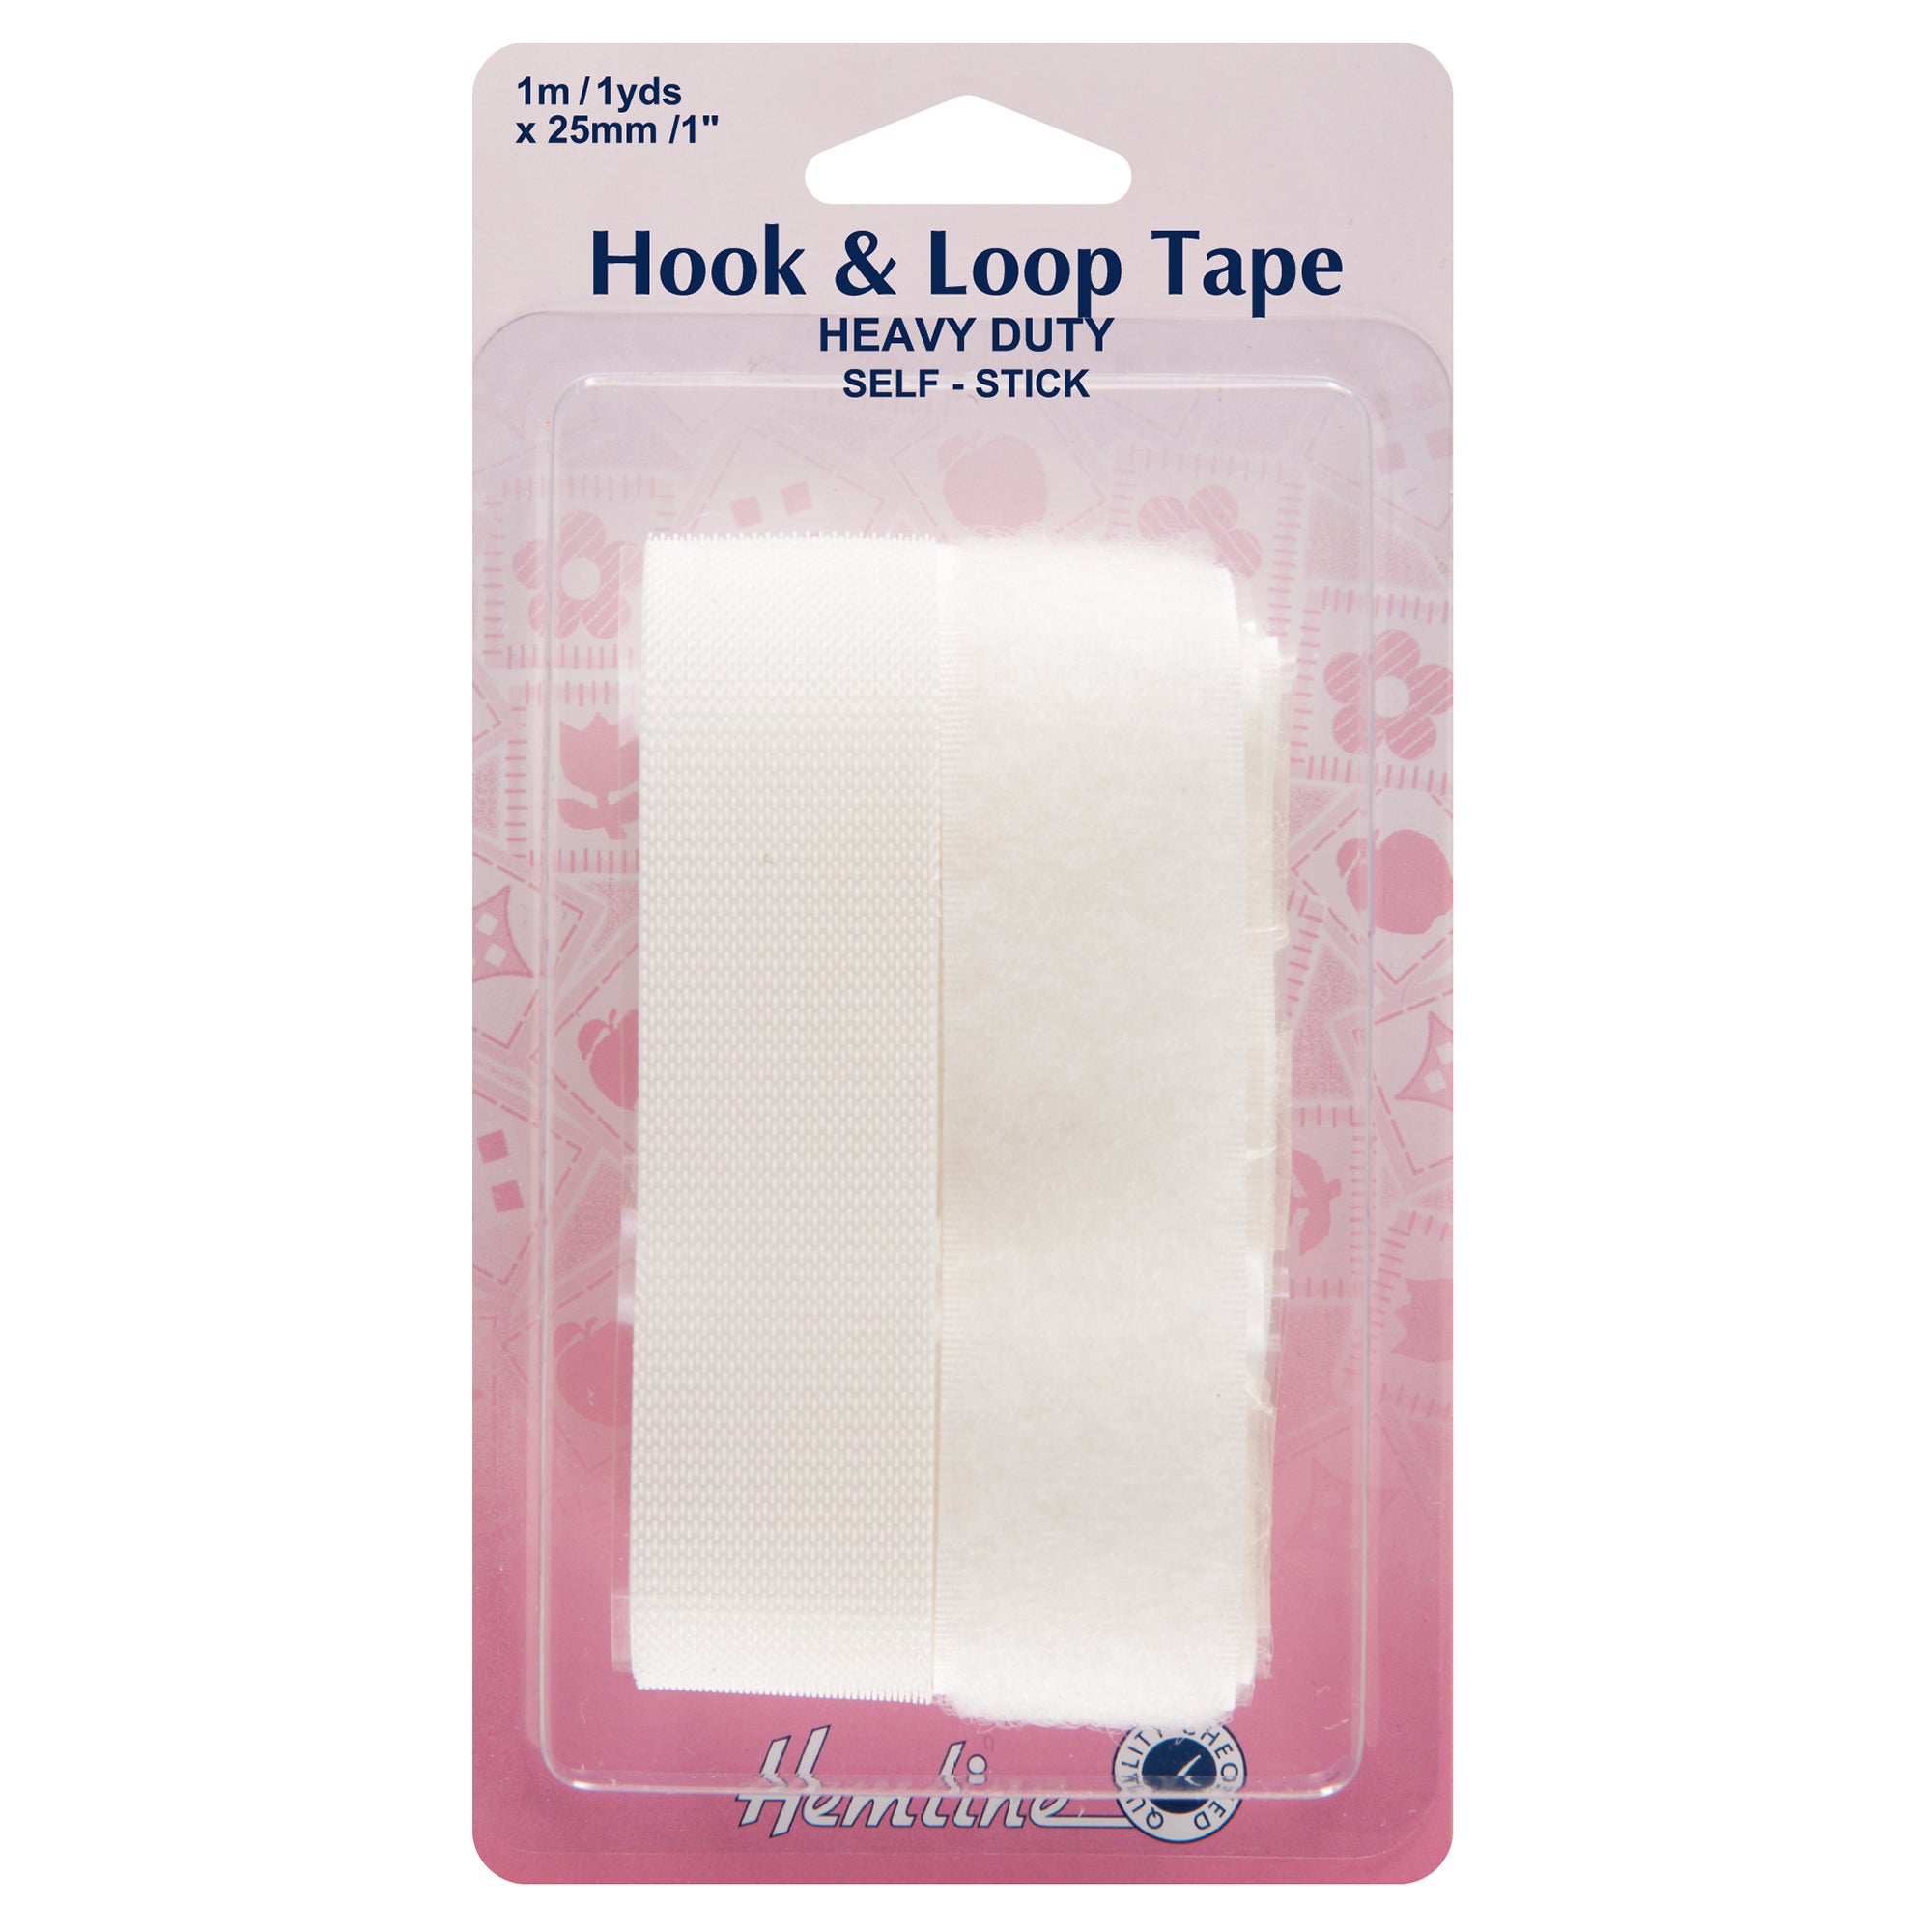 Hemline Heavy Duty Hook and Loop Tape